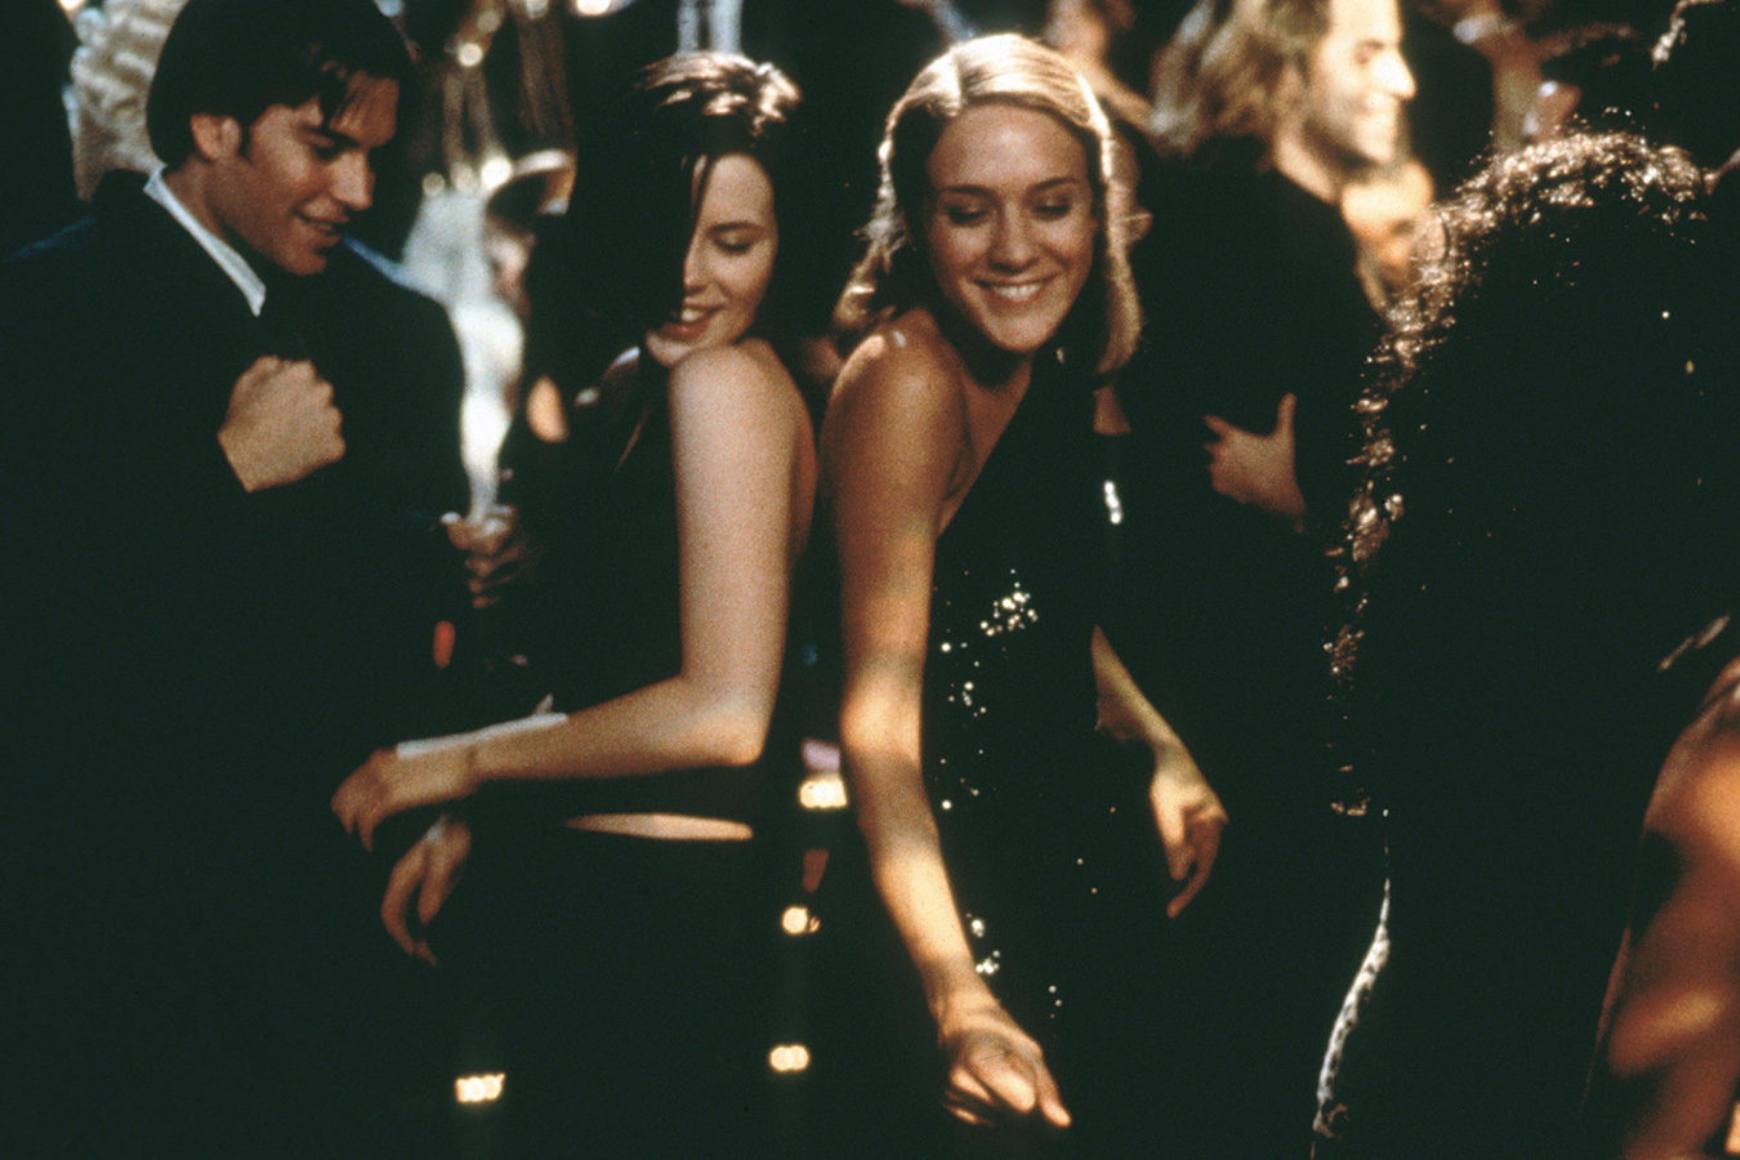 케이트 베킨세일(Kate Beckinsale)과 클로이 세비니(Chloë Sevigny)는 혼잡한 방에서 검은색 드레스를 입고 미소를 지으며 춤을 춥니다.